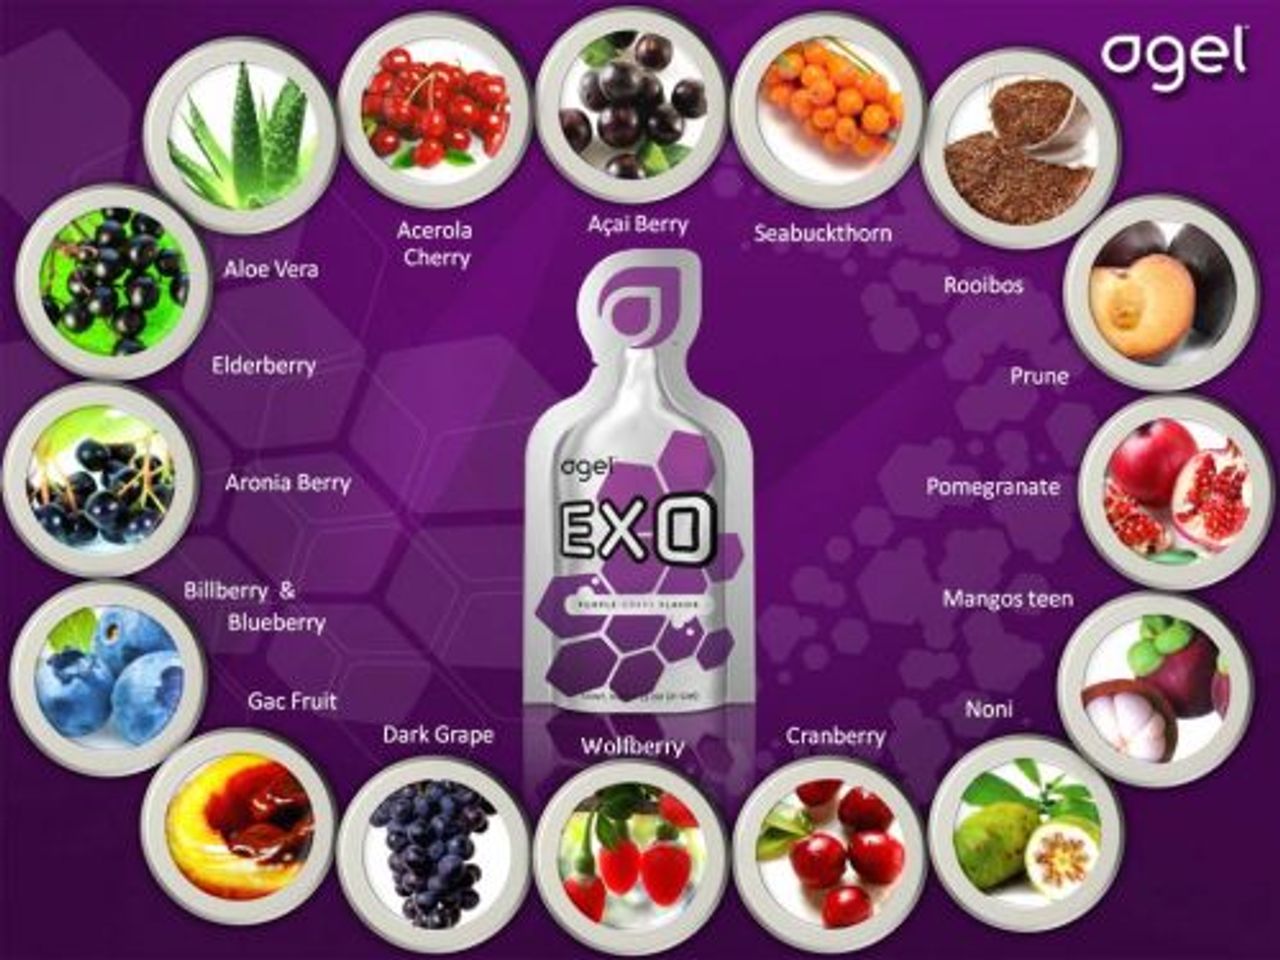 Agel EXO gel là sự kết hợp của 17 loại trái cây tự nhiên, cung cấp hơn 200 chất chống oxy hóa